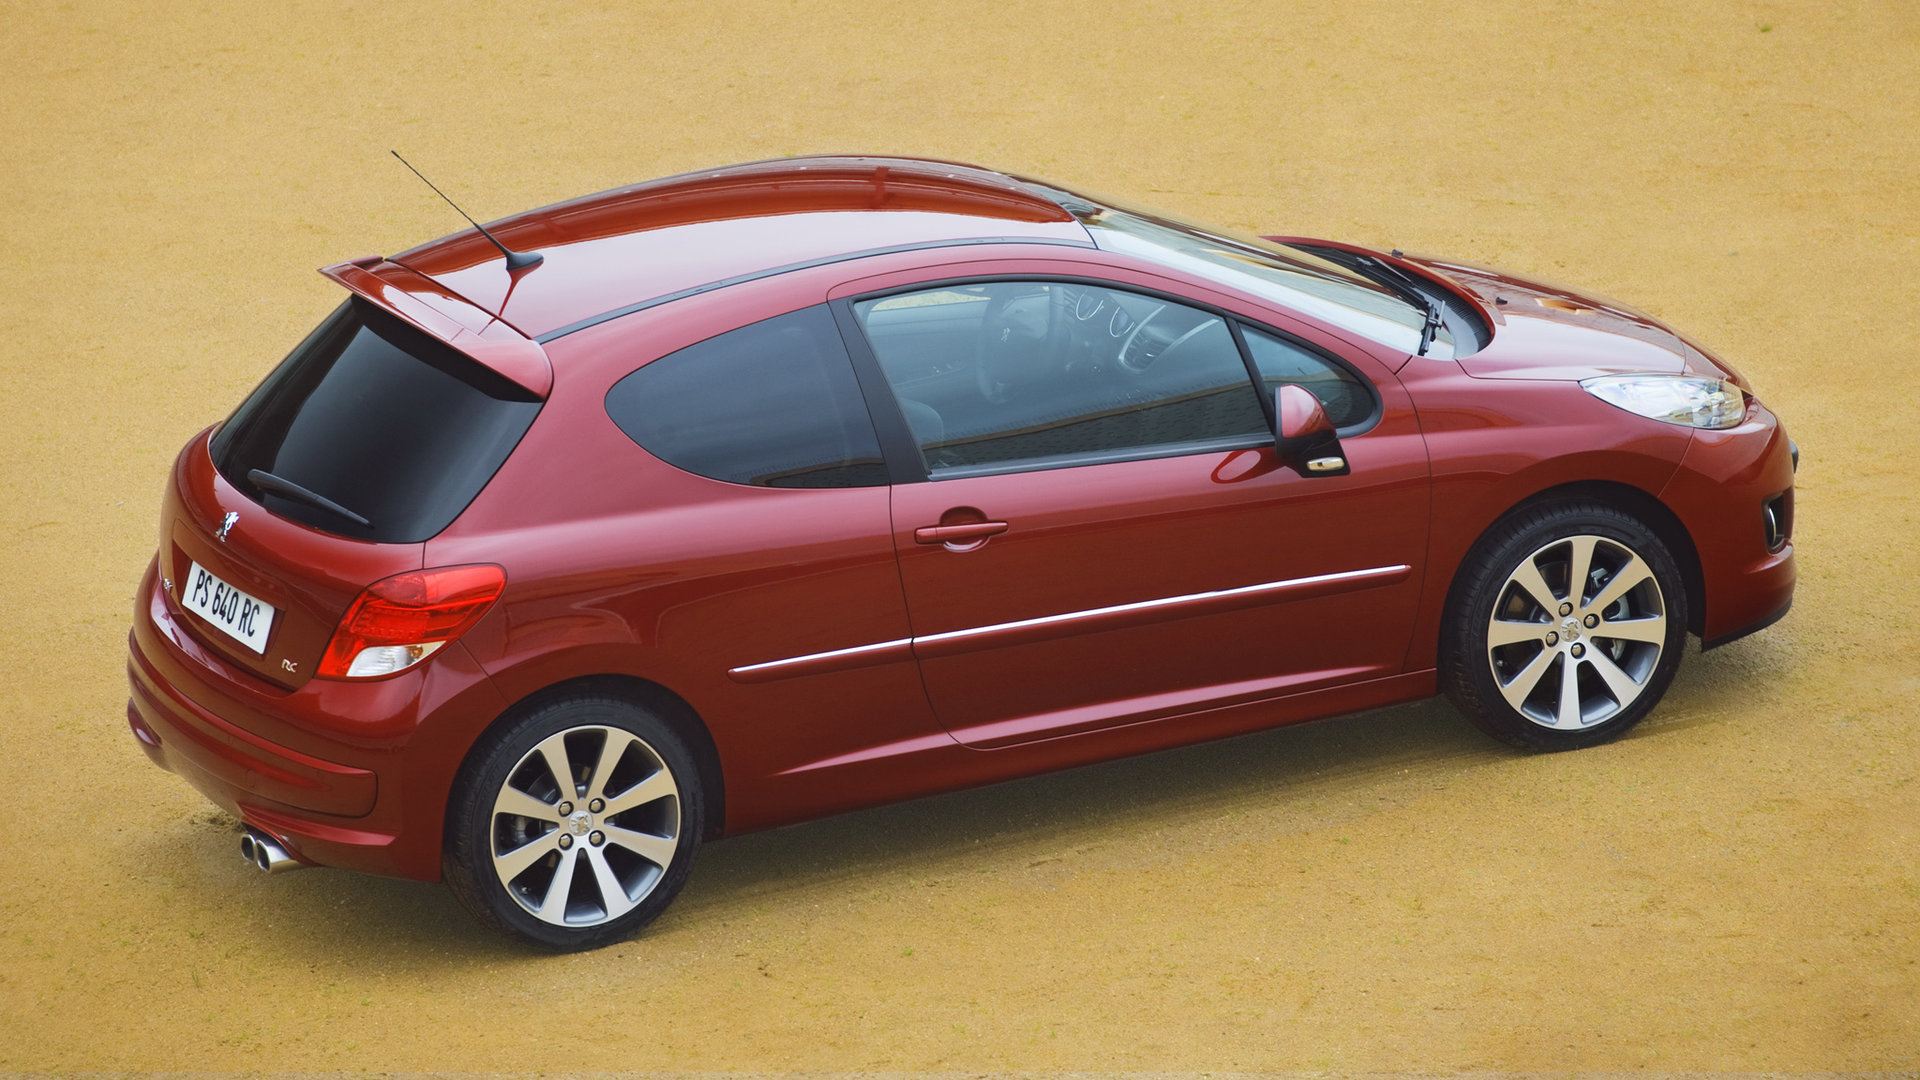 Coche del día: Peugeot 207 1.6 THP (2010)